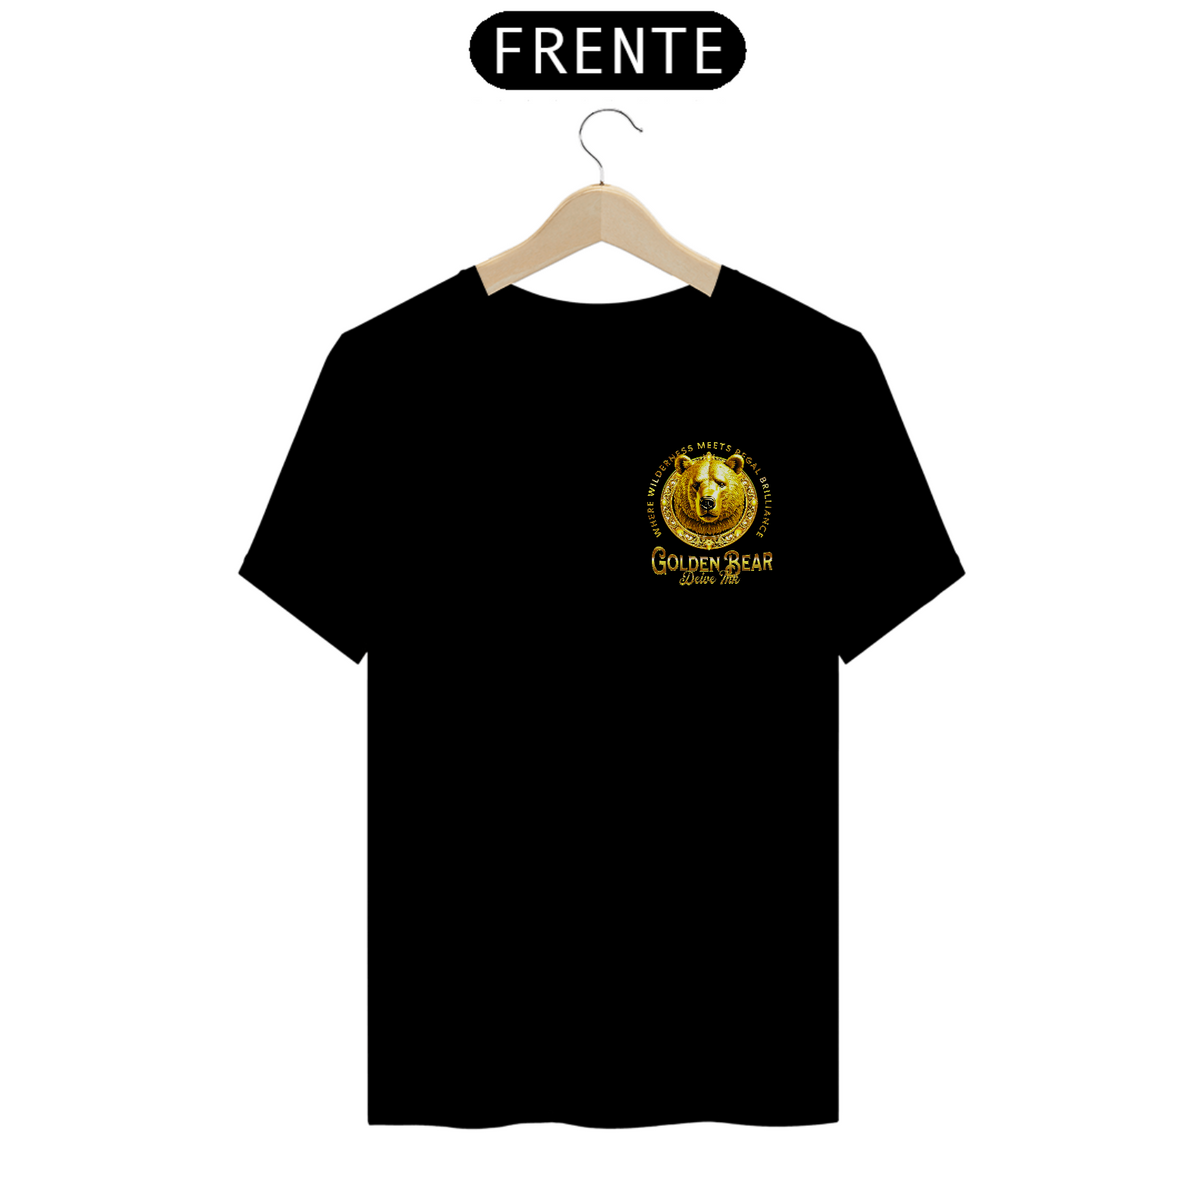 Nome do produto: Camiseta Golden Bear